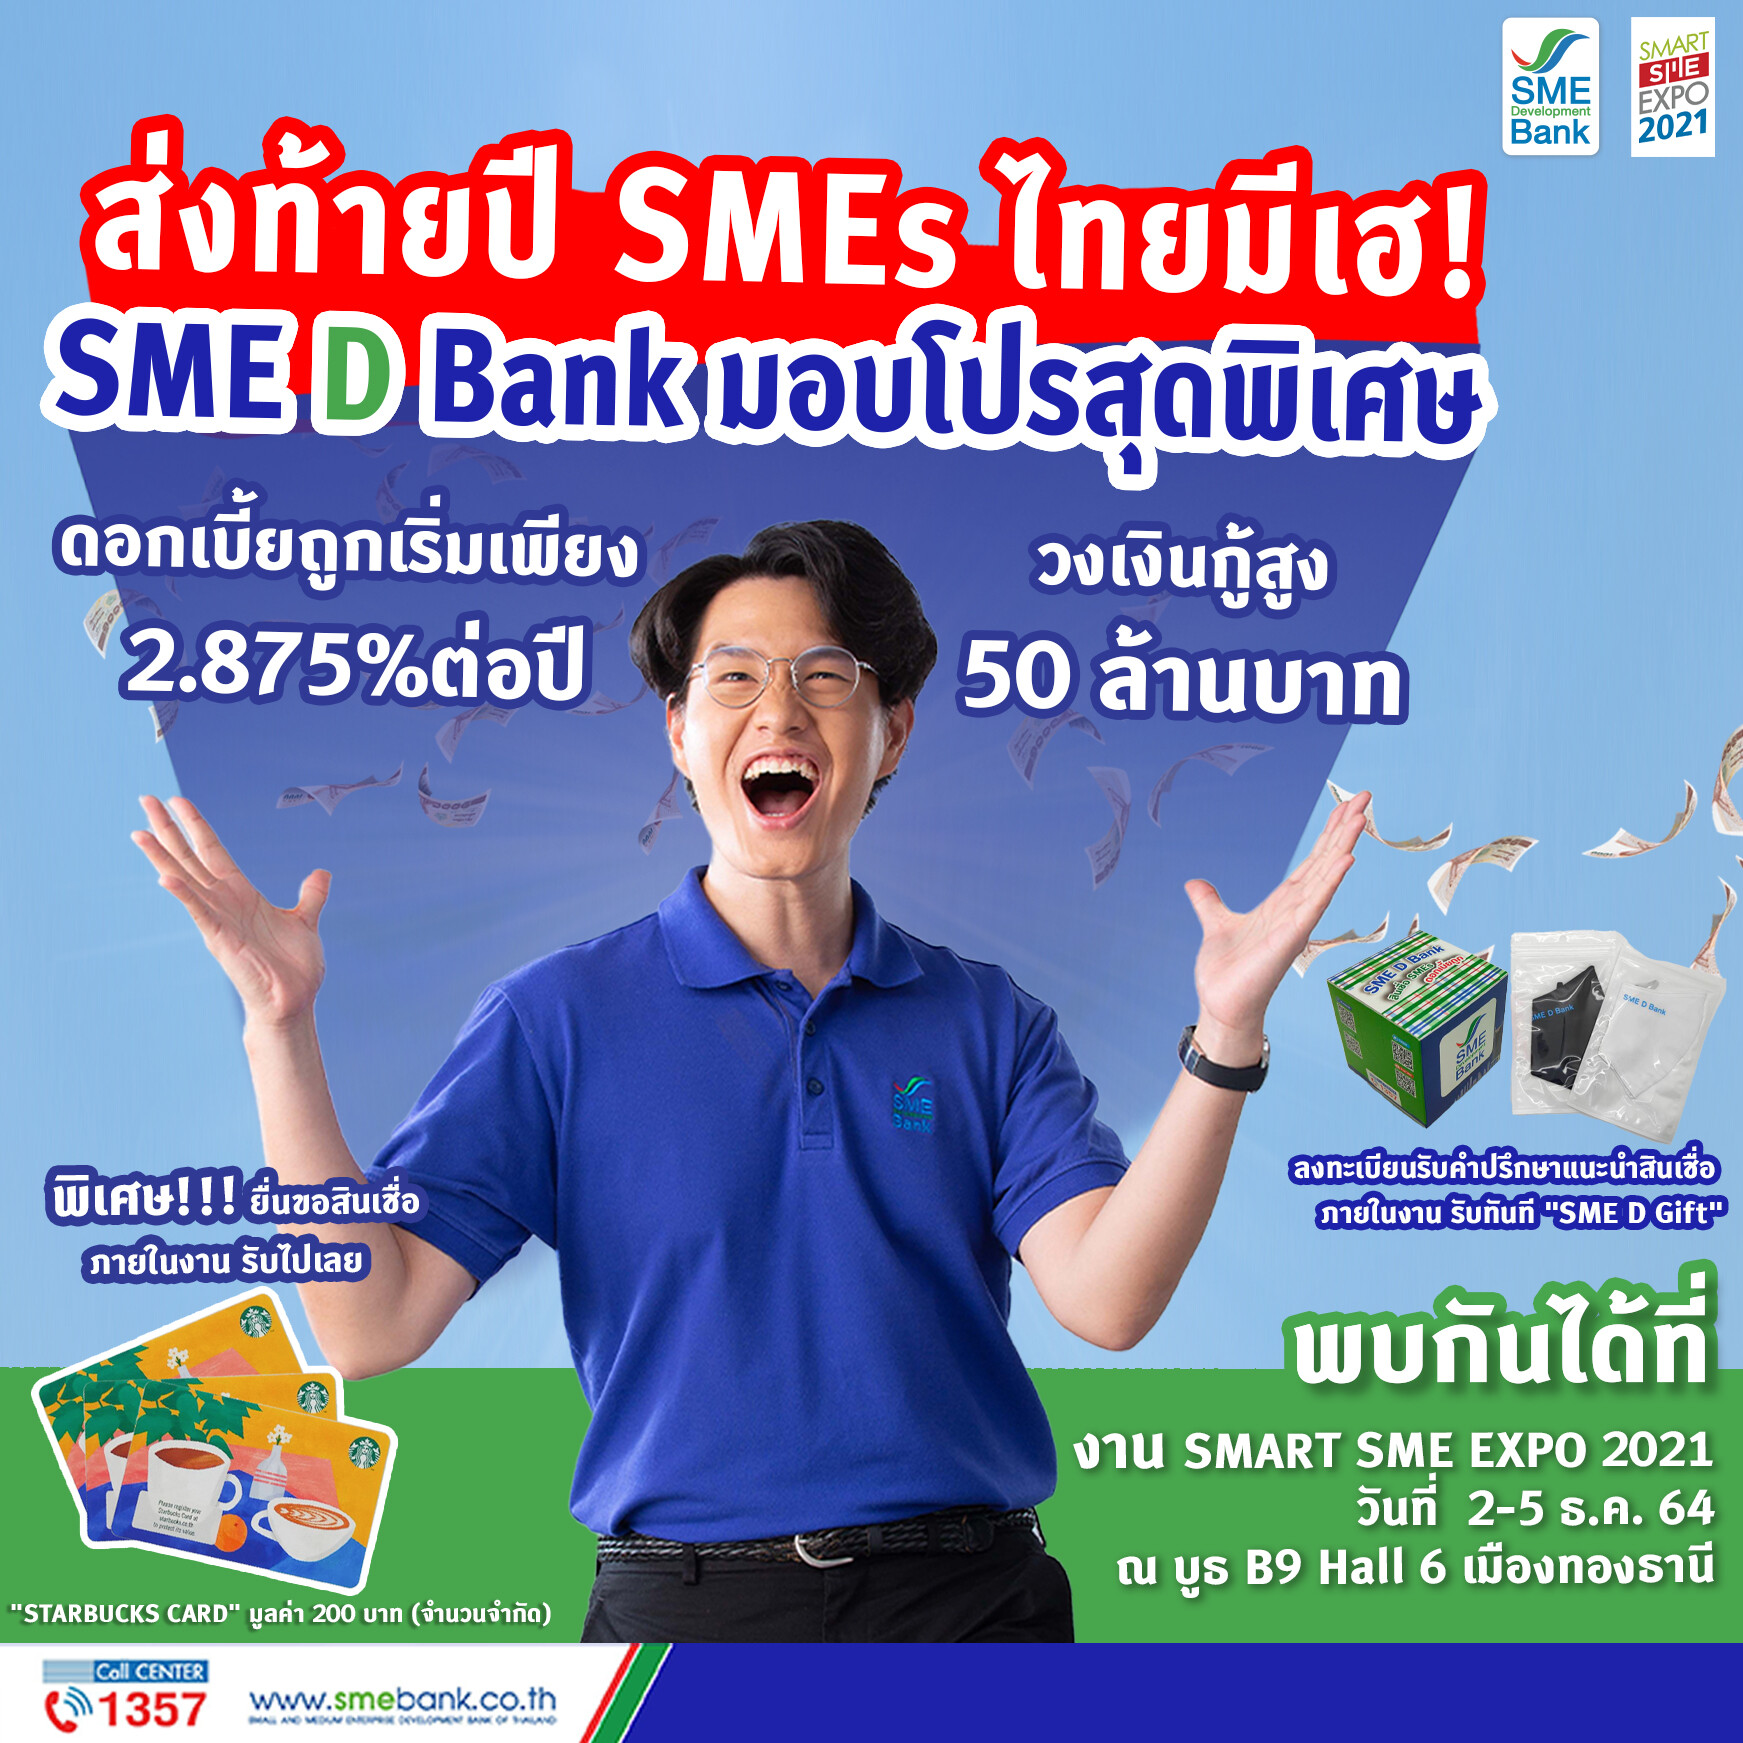 SME D Bank จัดเต็มรับโค้งสุดท้ายปี 64 ร่วมงาน 'SMART SME EXPO 2021' ยกขบวนสินเชื่อดอกเบี้ยต่ำ พร้อมเสิร์ฟเอสเอ็มอีไทย วงเงินกู้สูงสุด 50 ลบ.